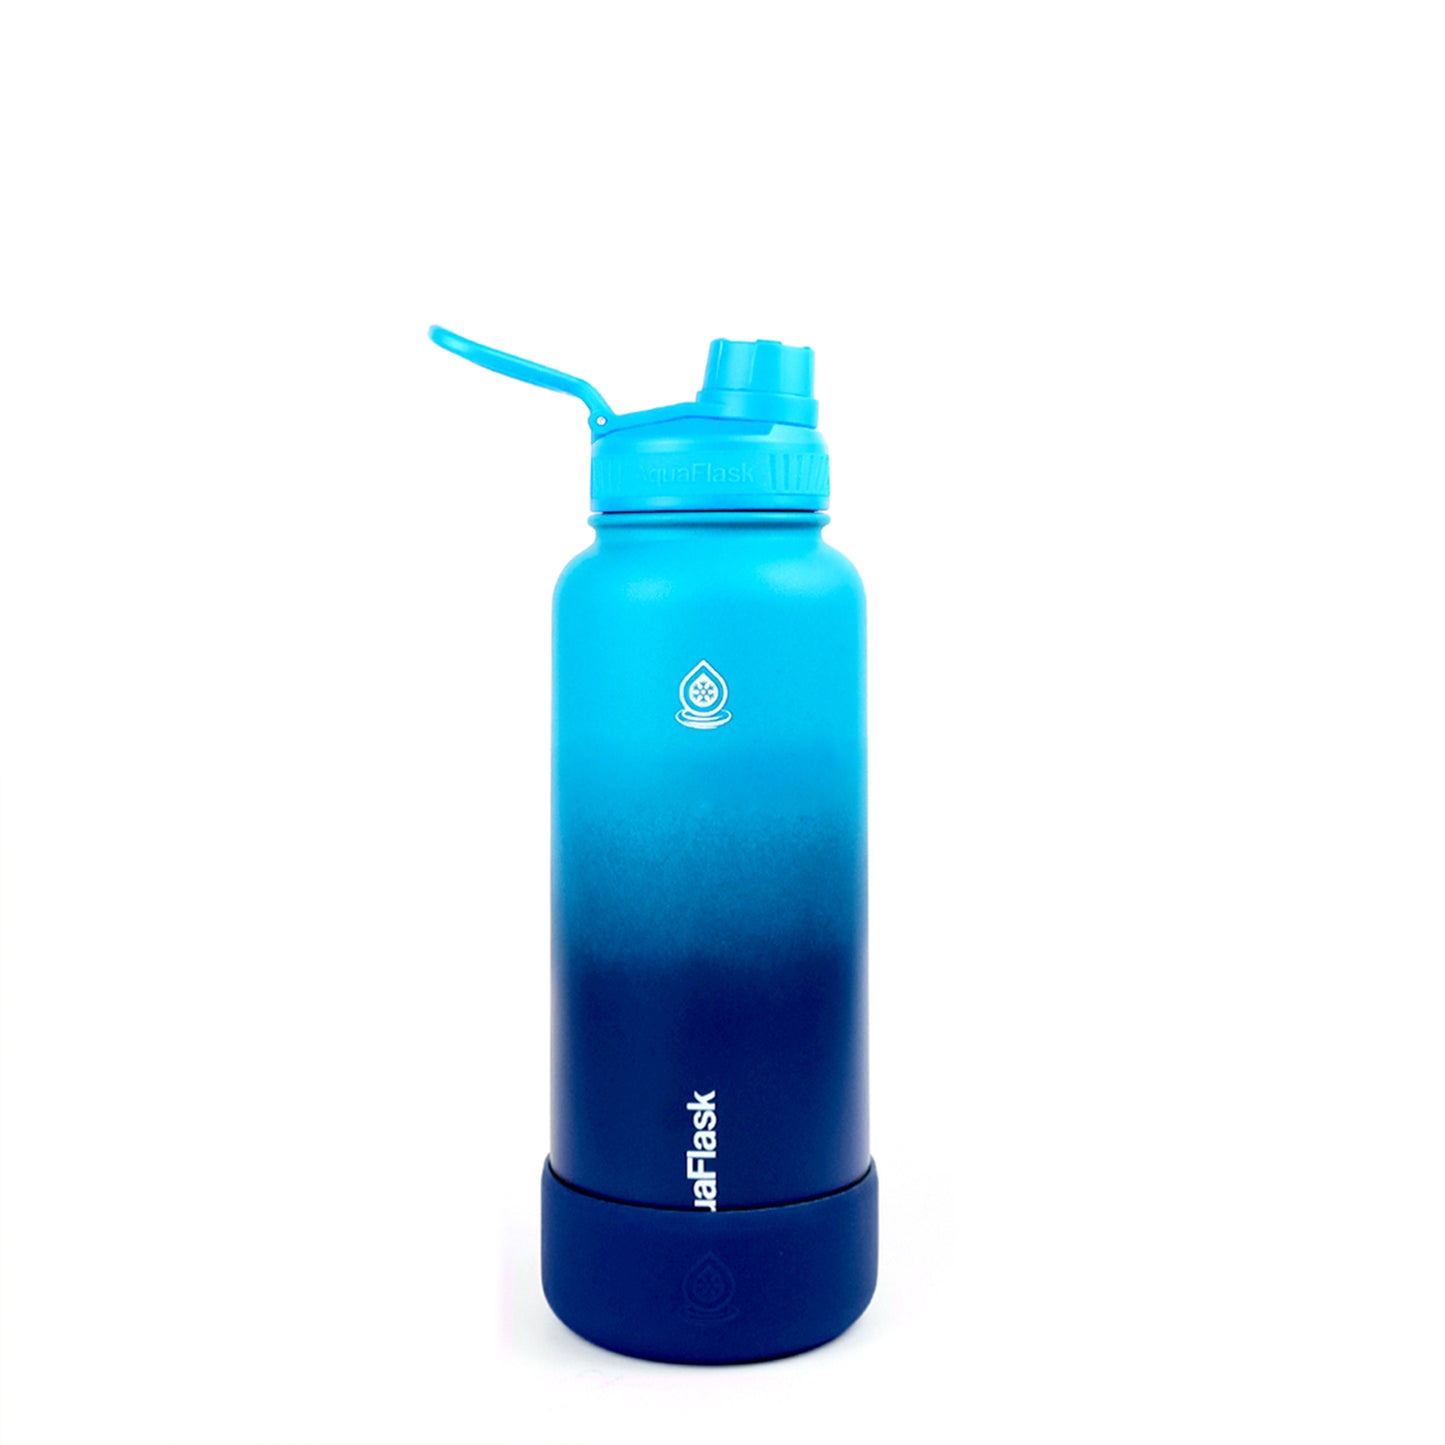 AquaFlask Dream 3 Vacuum Insulated Water Bottles 945ml (32oz)